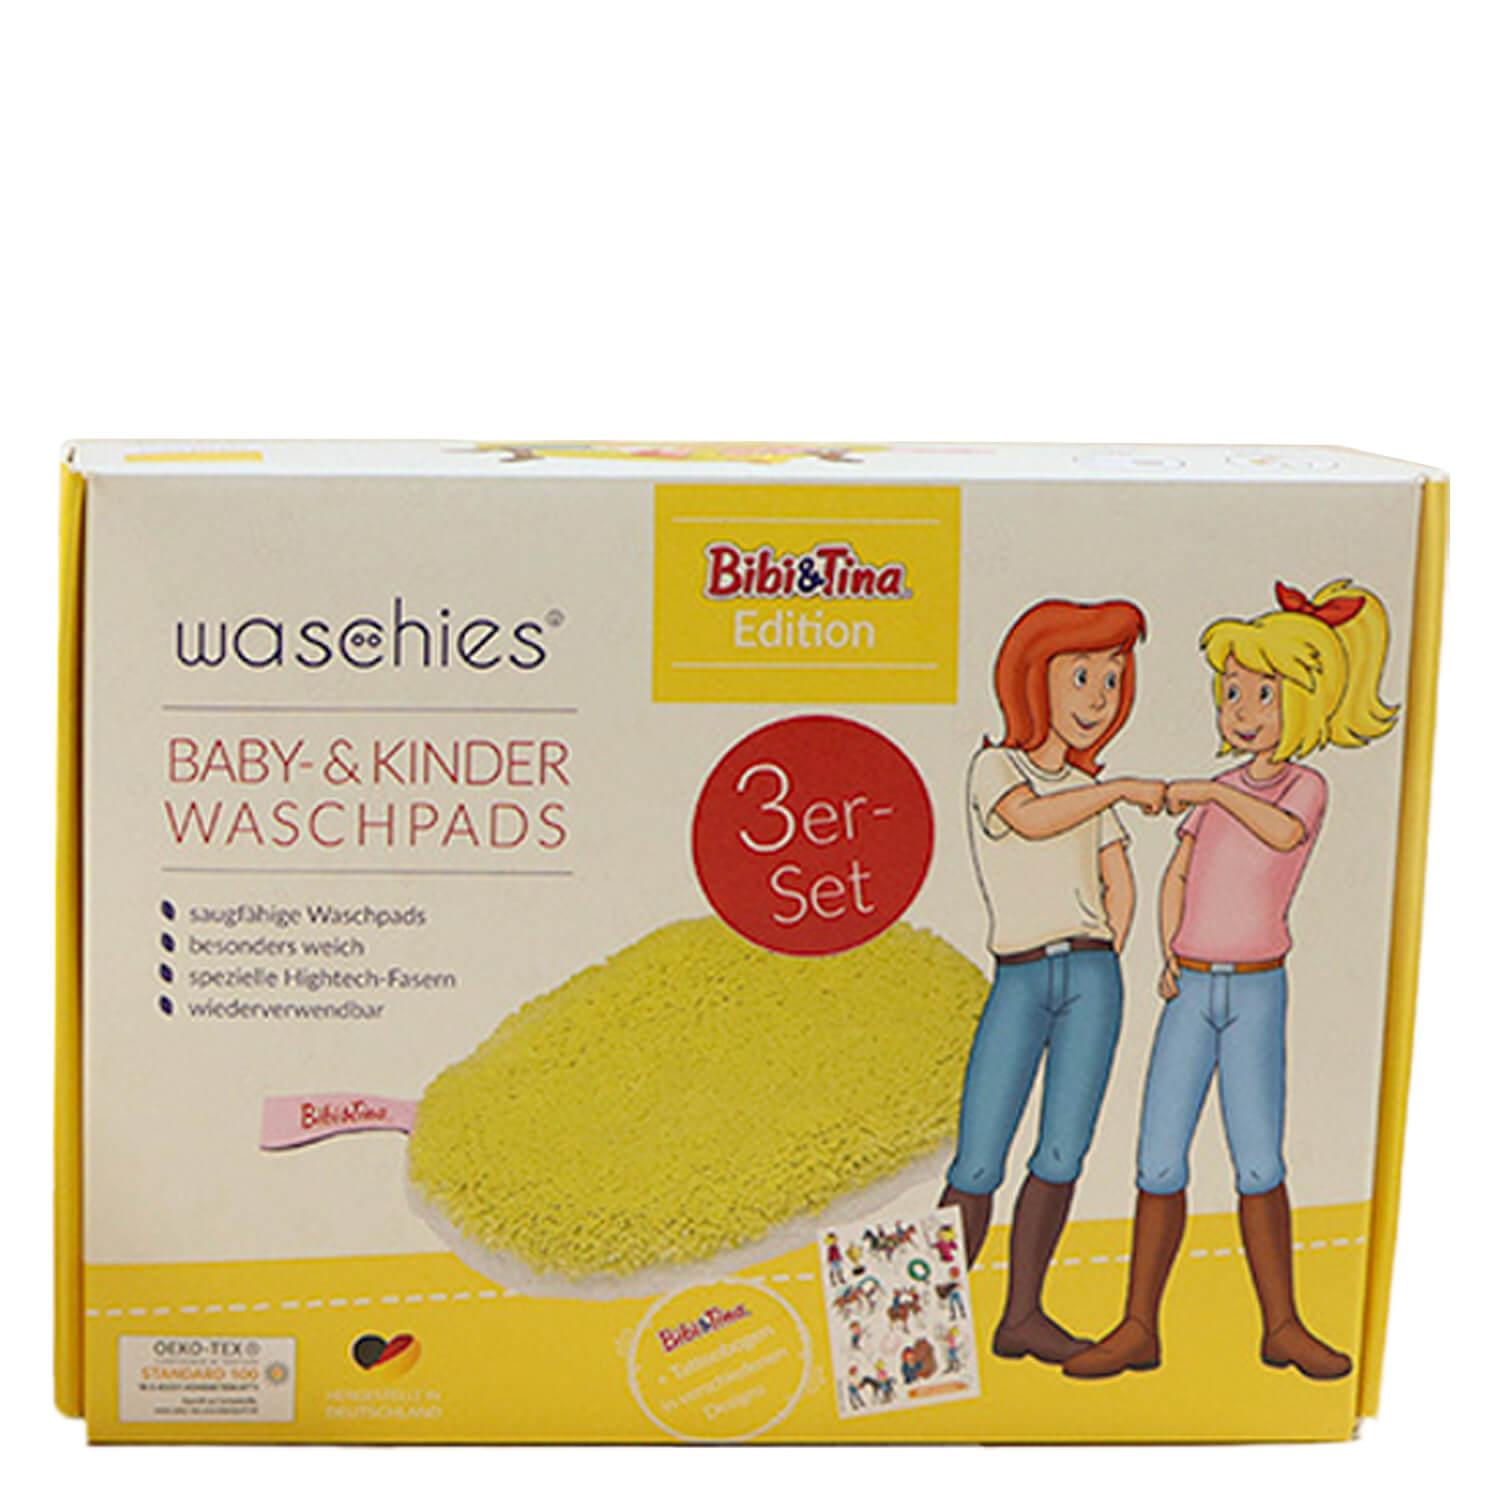 Waschies Kidsline - Waschpads für Babys & Kinder Bibi&Tina Gelb Edition